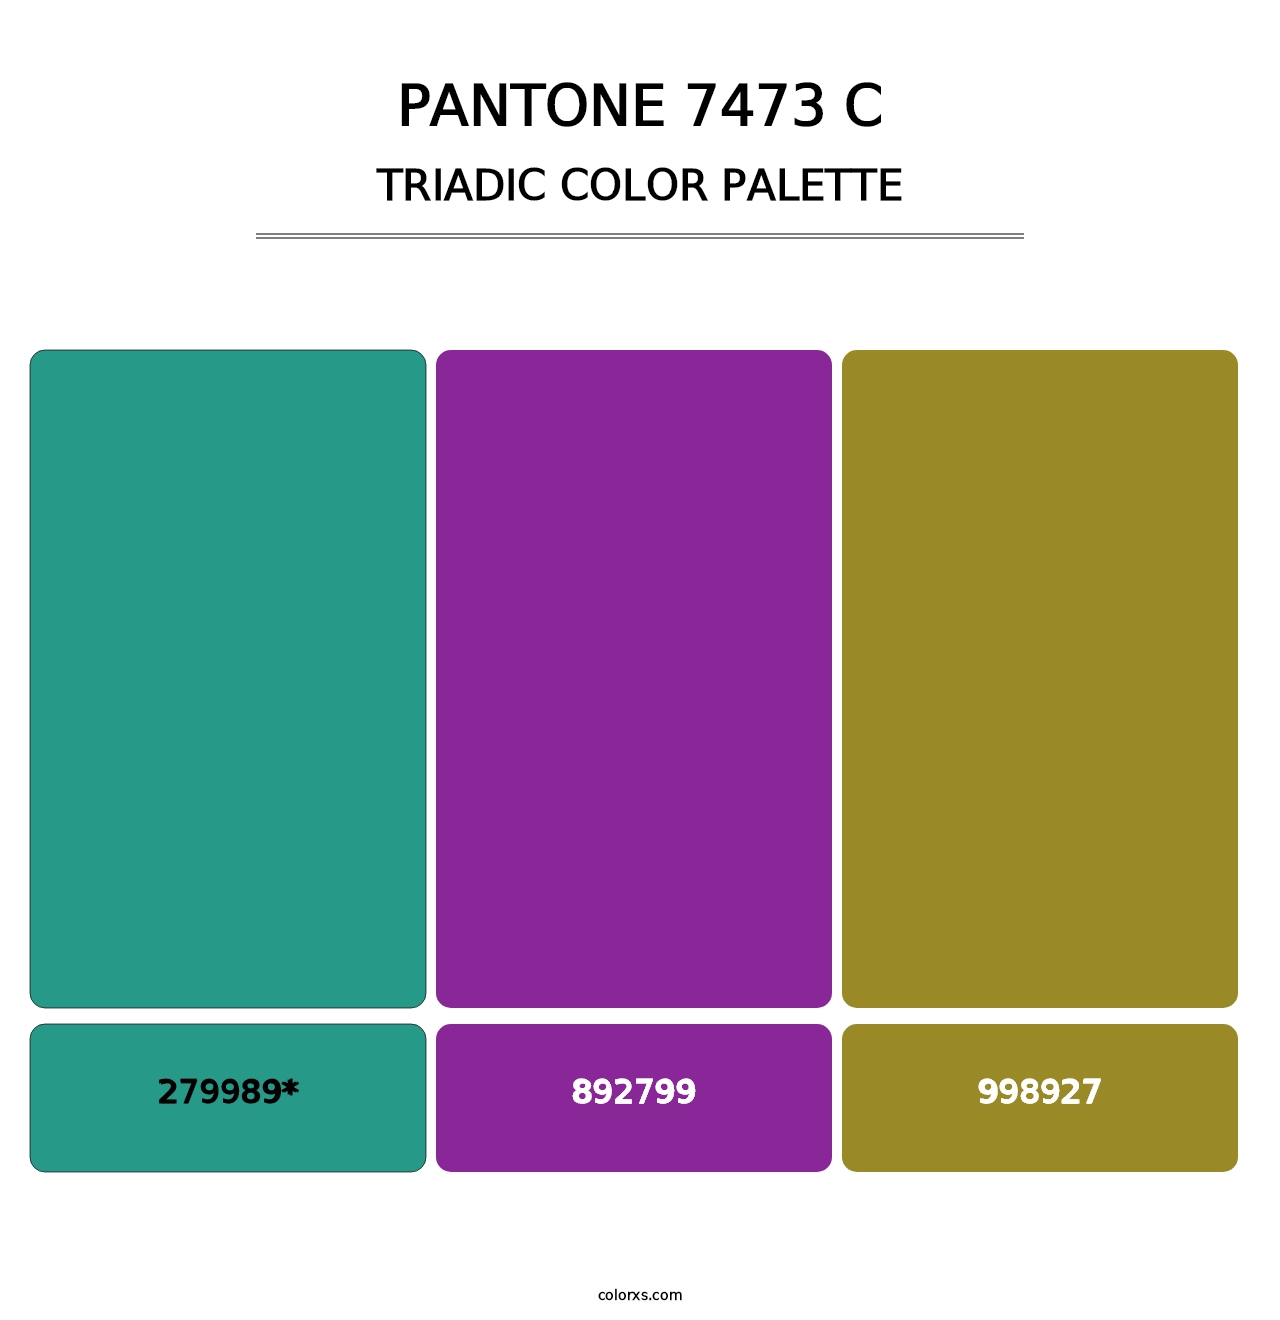 PANTONE 7473 C - Triadic Color Palette